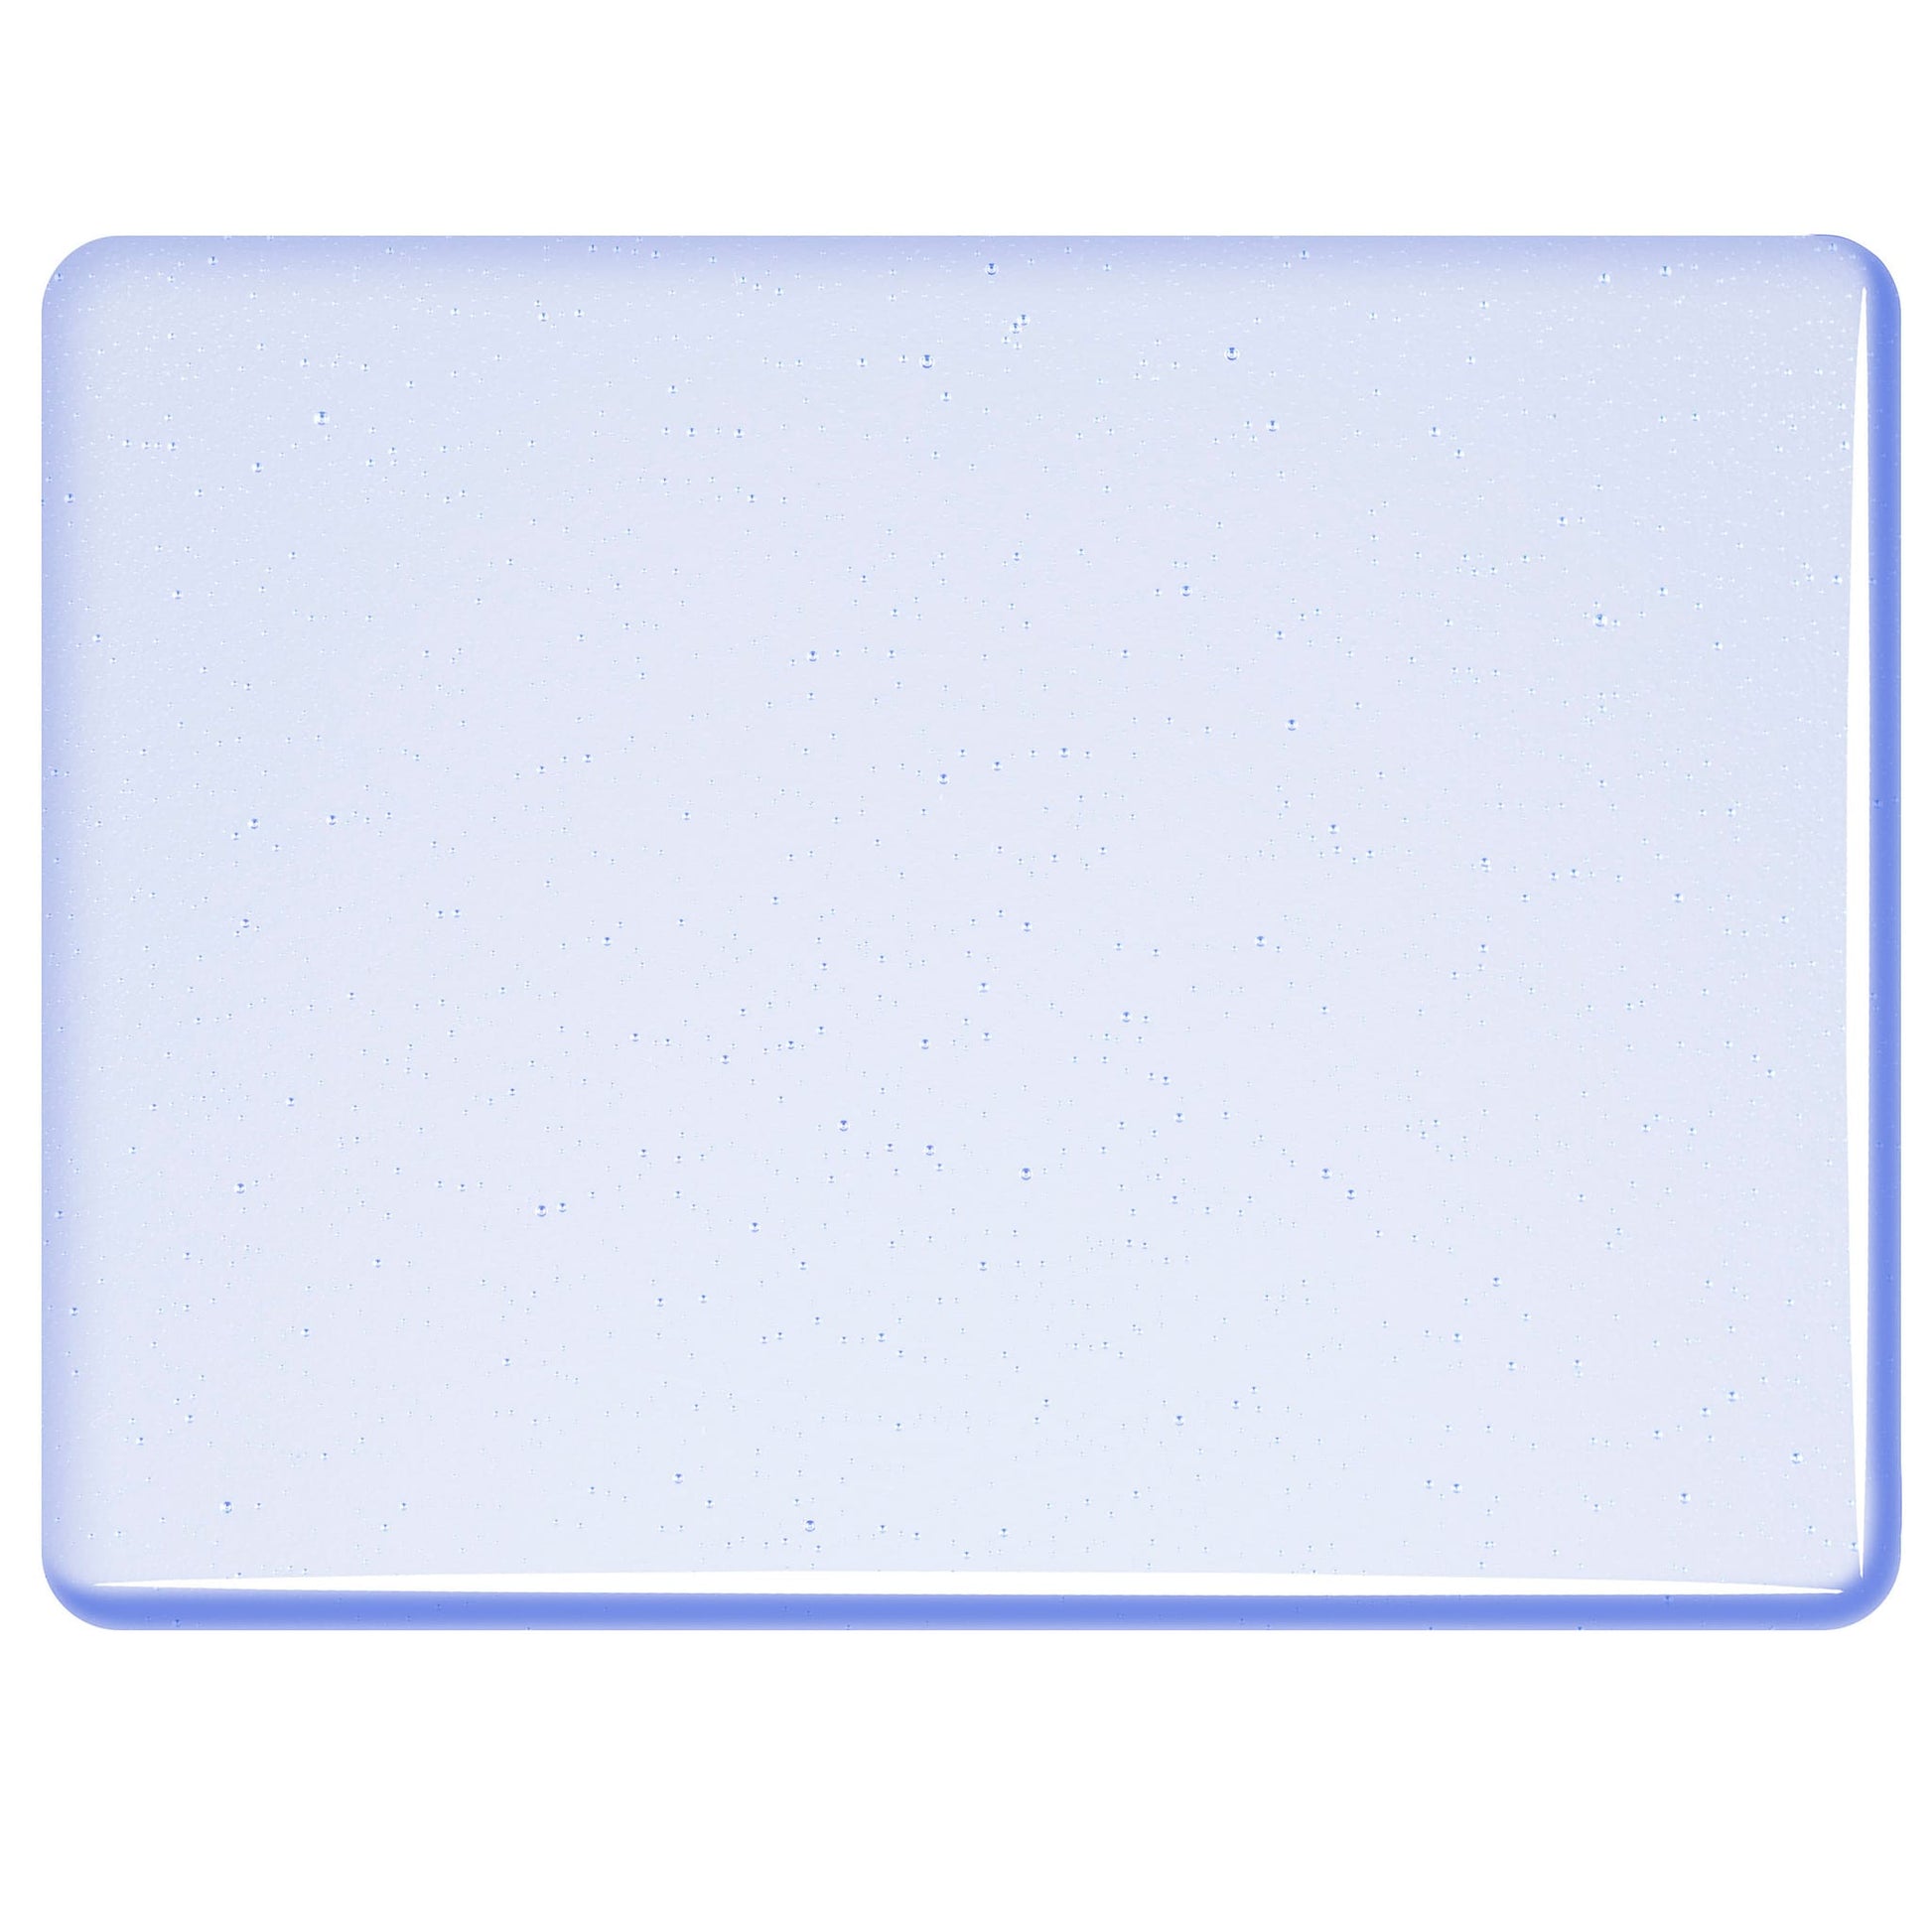 Bullseye COE90 Fusing Glass 001814 Sapphire Blue Tint Handy Sheet